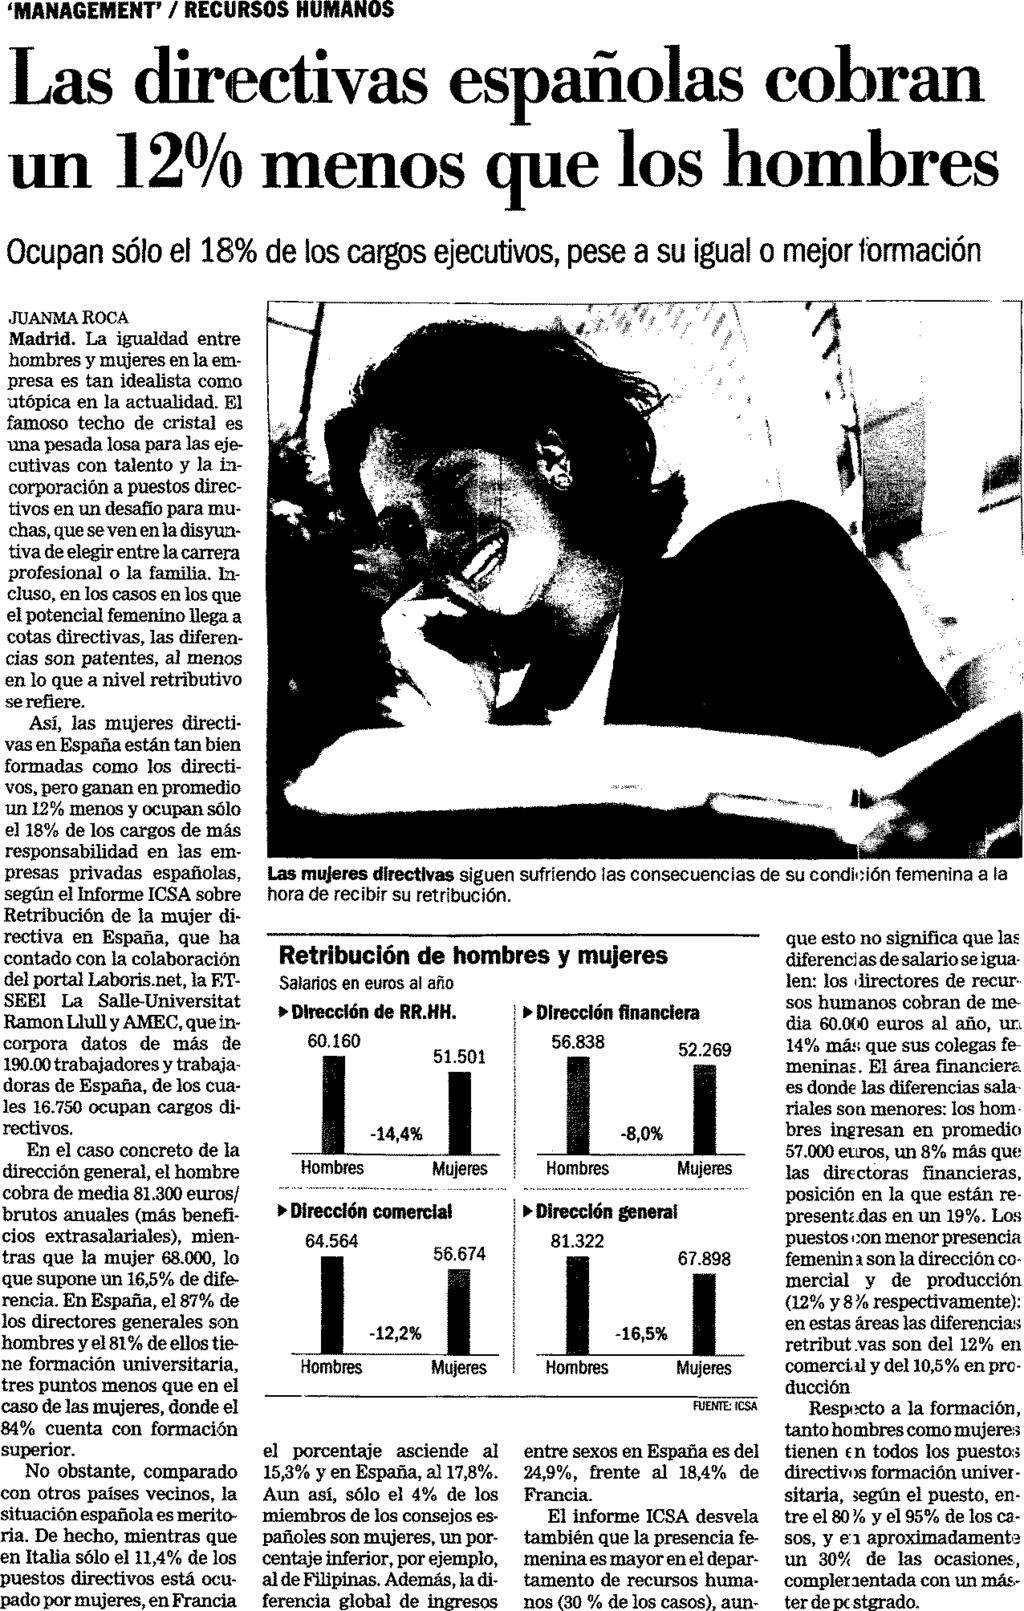 08/03/07 LA GACETA DE LOS NEGOCIOS MADRID Cód 12333846 Premsa: Tirada: Difusió: Diaria